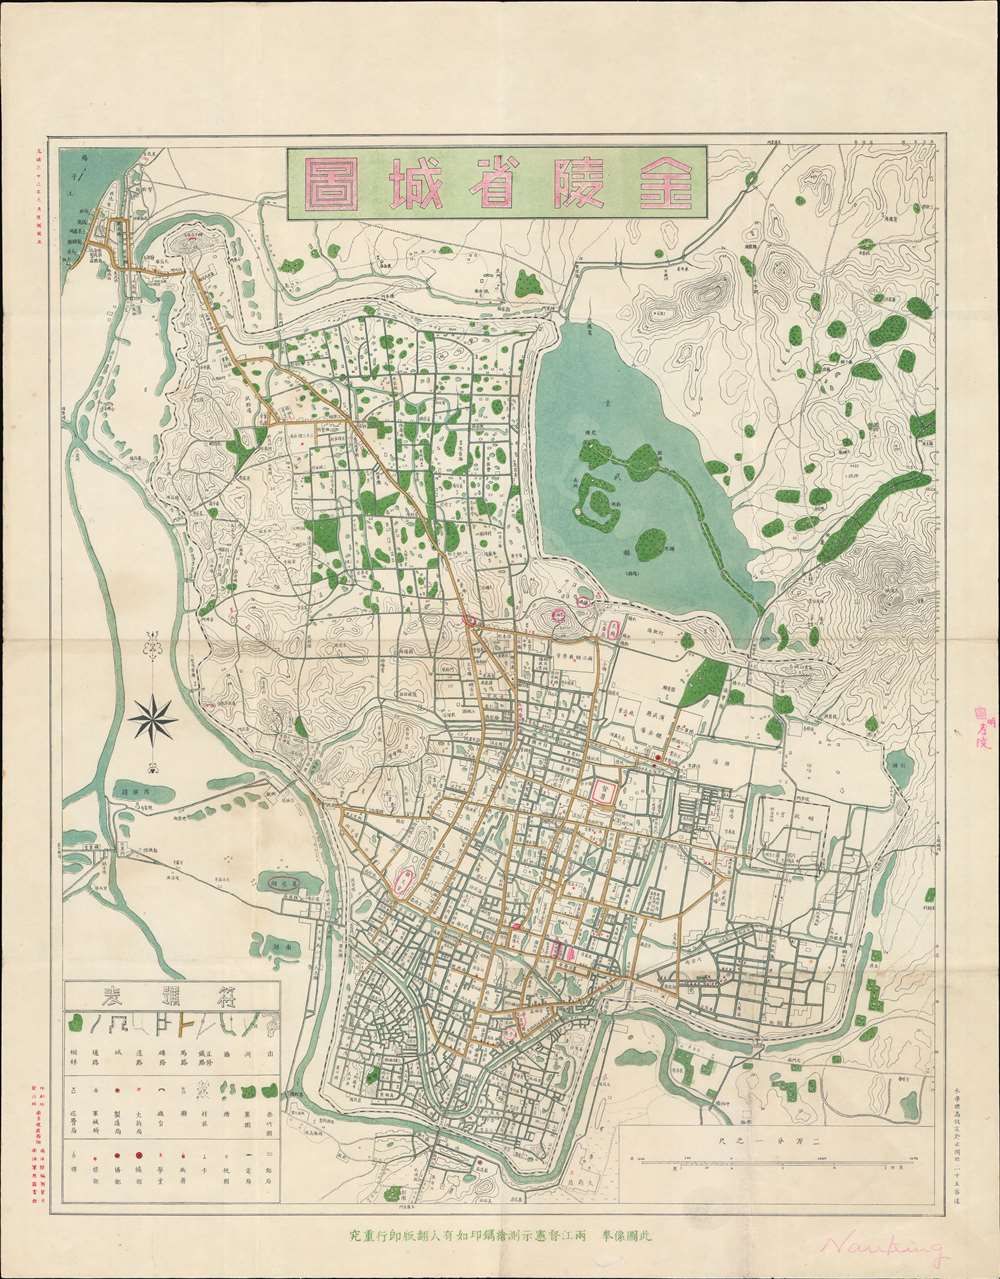 金陵省城圖 / 金陵省城图 / Jinling Provincial City Map. - Main View